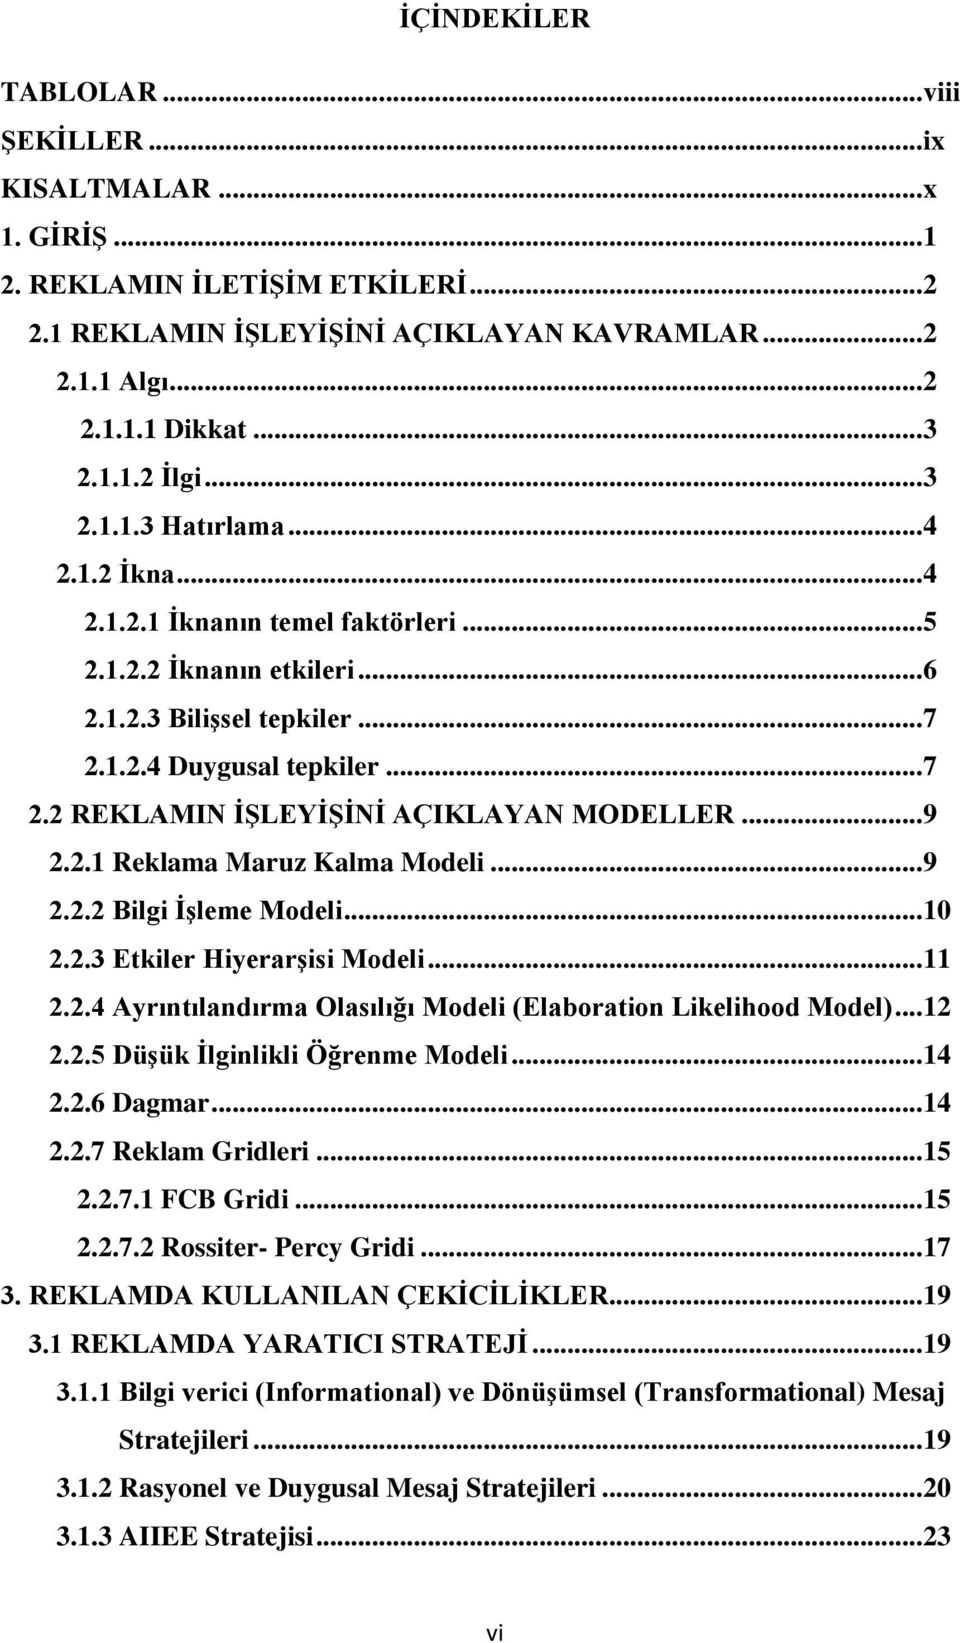 .. 9 2.2.1 Reklama Maruz Kalma Modeli... 9 2.2.2 Bilgi ĠĢleme Modeli... 10 2.2.3 Etkiler HiyerarĢisi Modeli... 11 2.2.4 Ayrıntılandırma Olasılığı Modeli (Elaboration Likelihood Model)... 12 2.2.5 DüĢük Ġlginlikli Öğrenme Modeli.